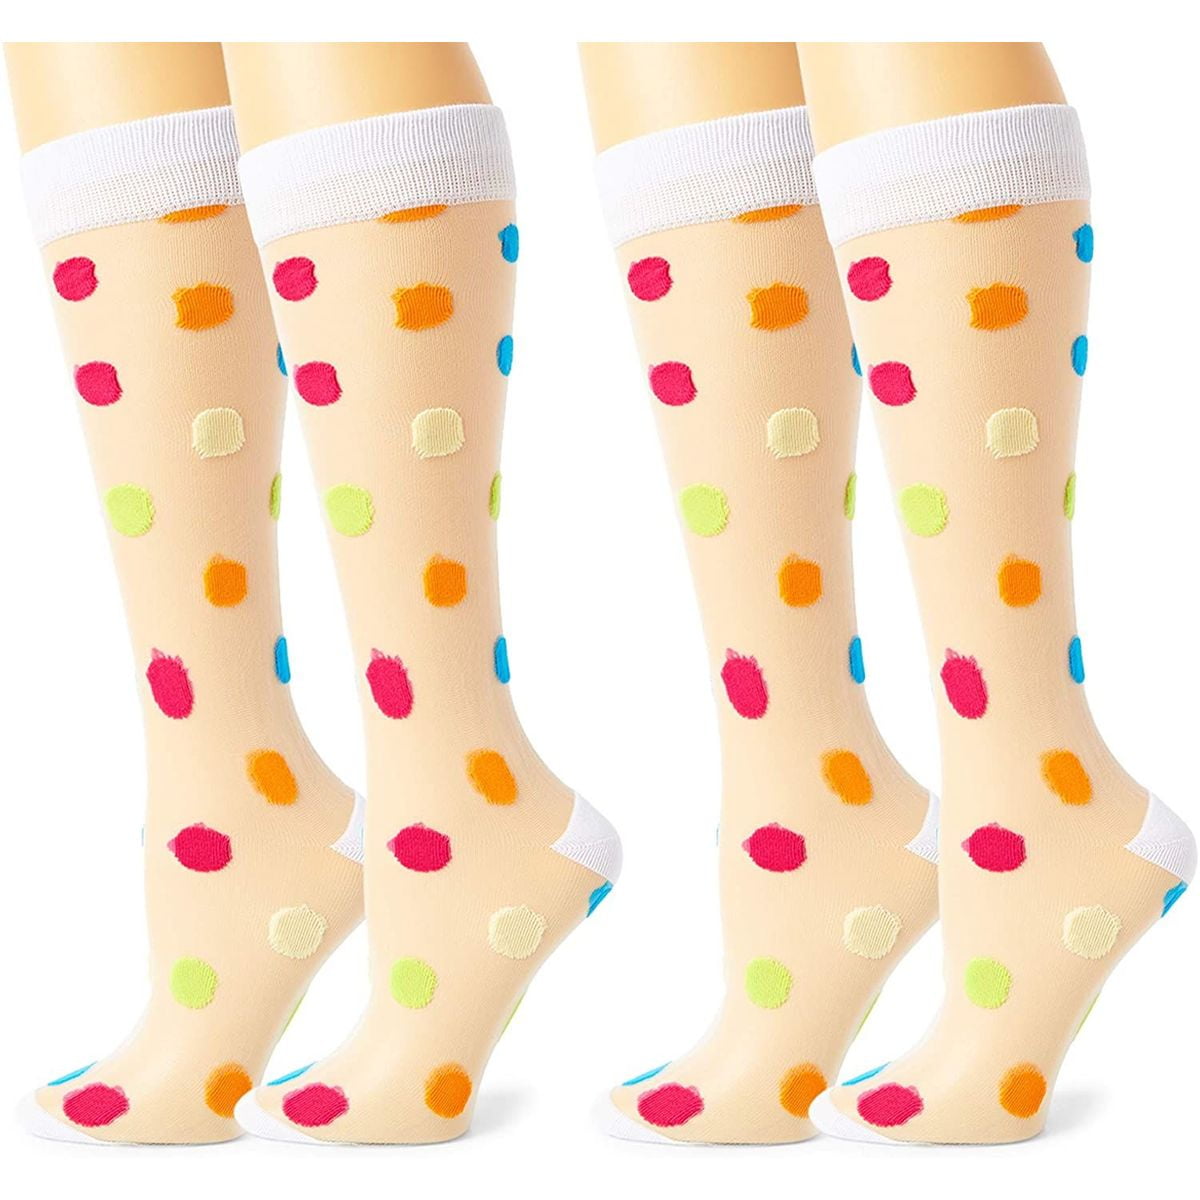 Butterfly Iron Polka Dot Girls Knee High Socks Toddler Kids Socks Cotton Leg Warmers